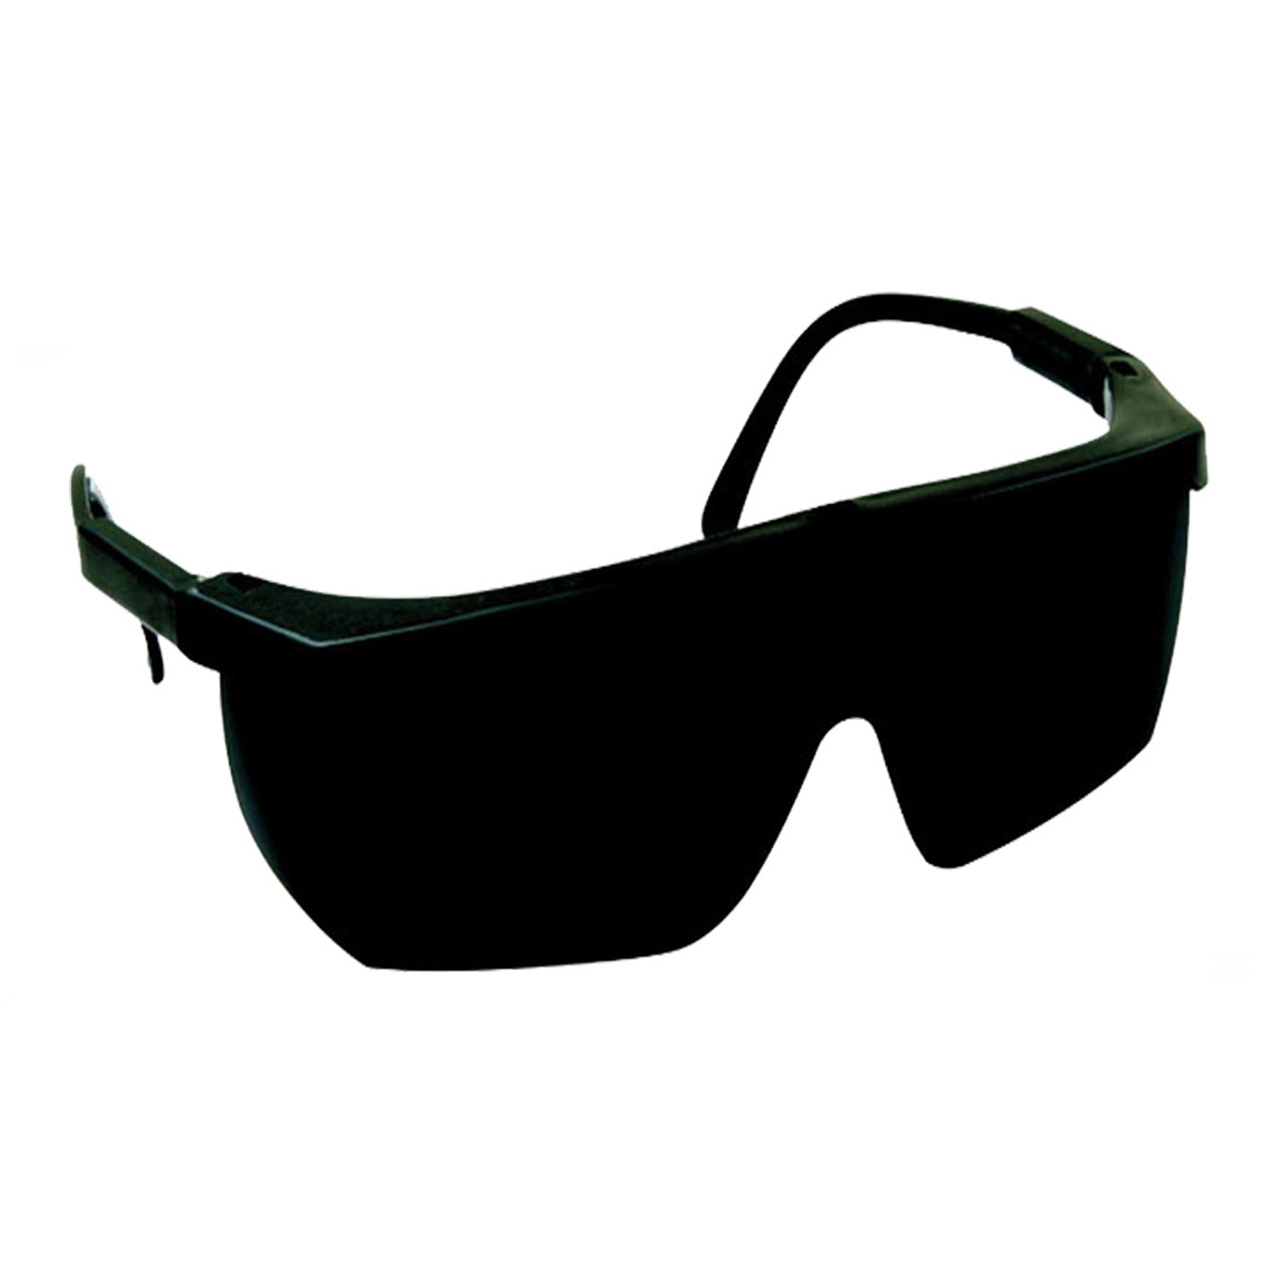 مجموعه 4 عددی عینک جوشکاری بوش مدل N09-C